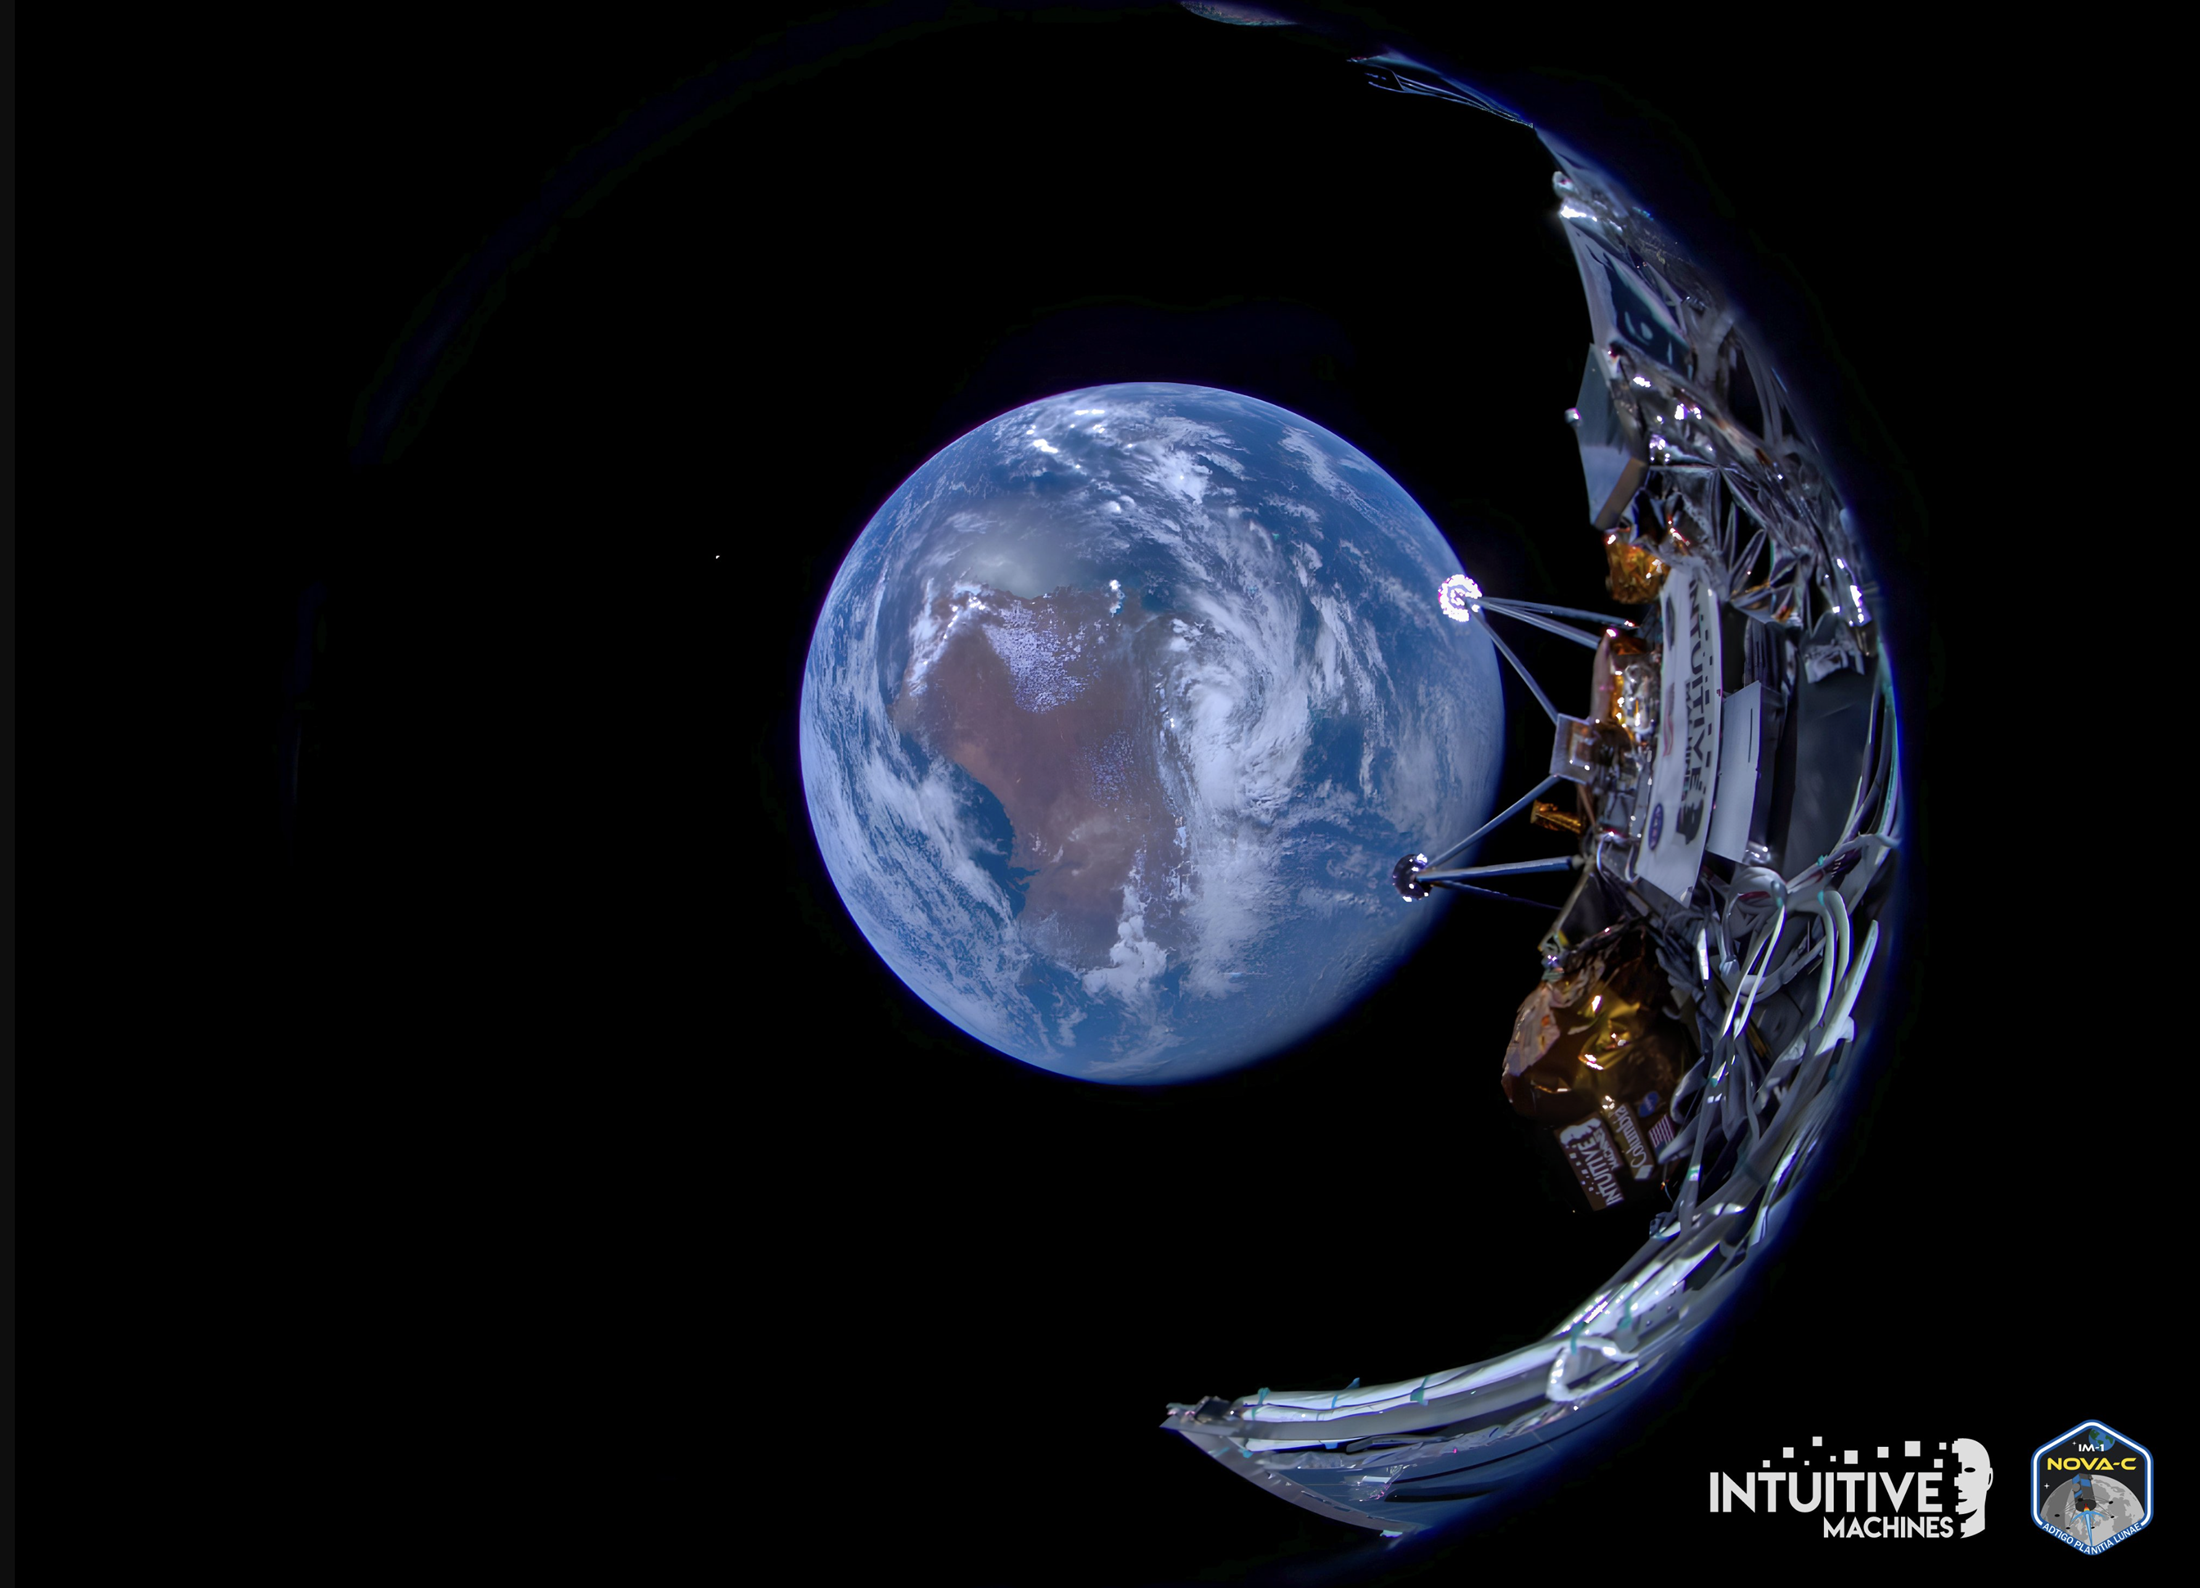 Fotografija koja prikazuje NOVA-C lander i Zemlju u pozadini. Zasluge: X/Intuitive Machines.